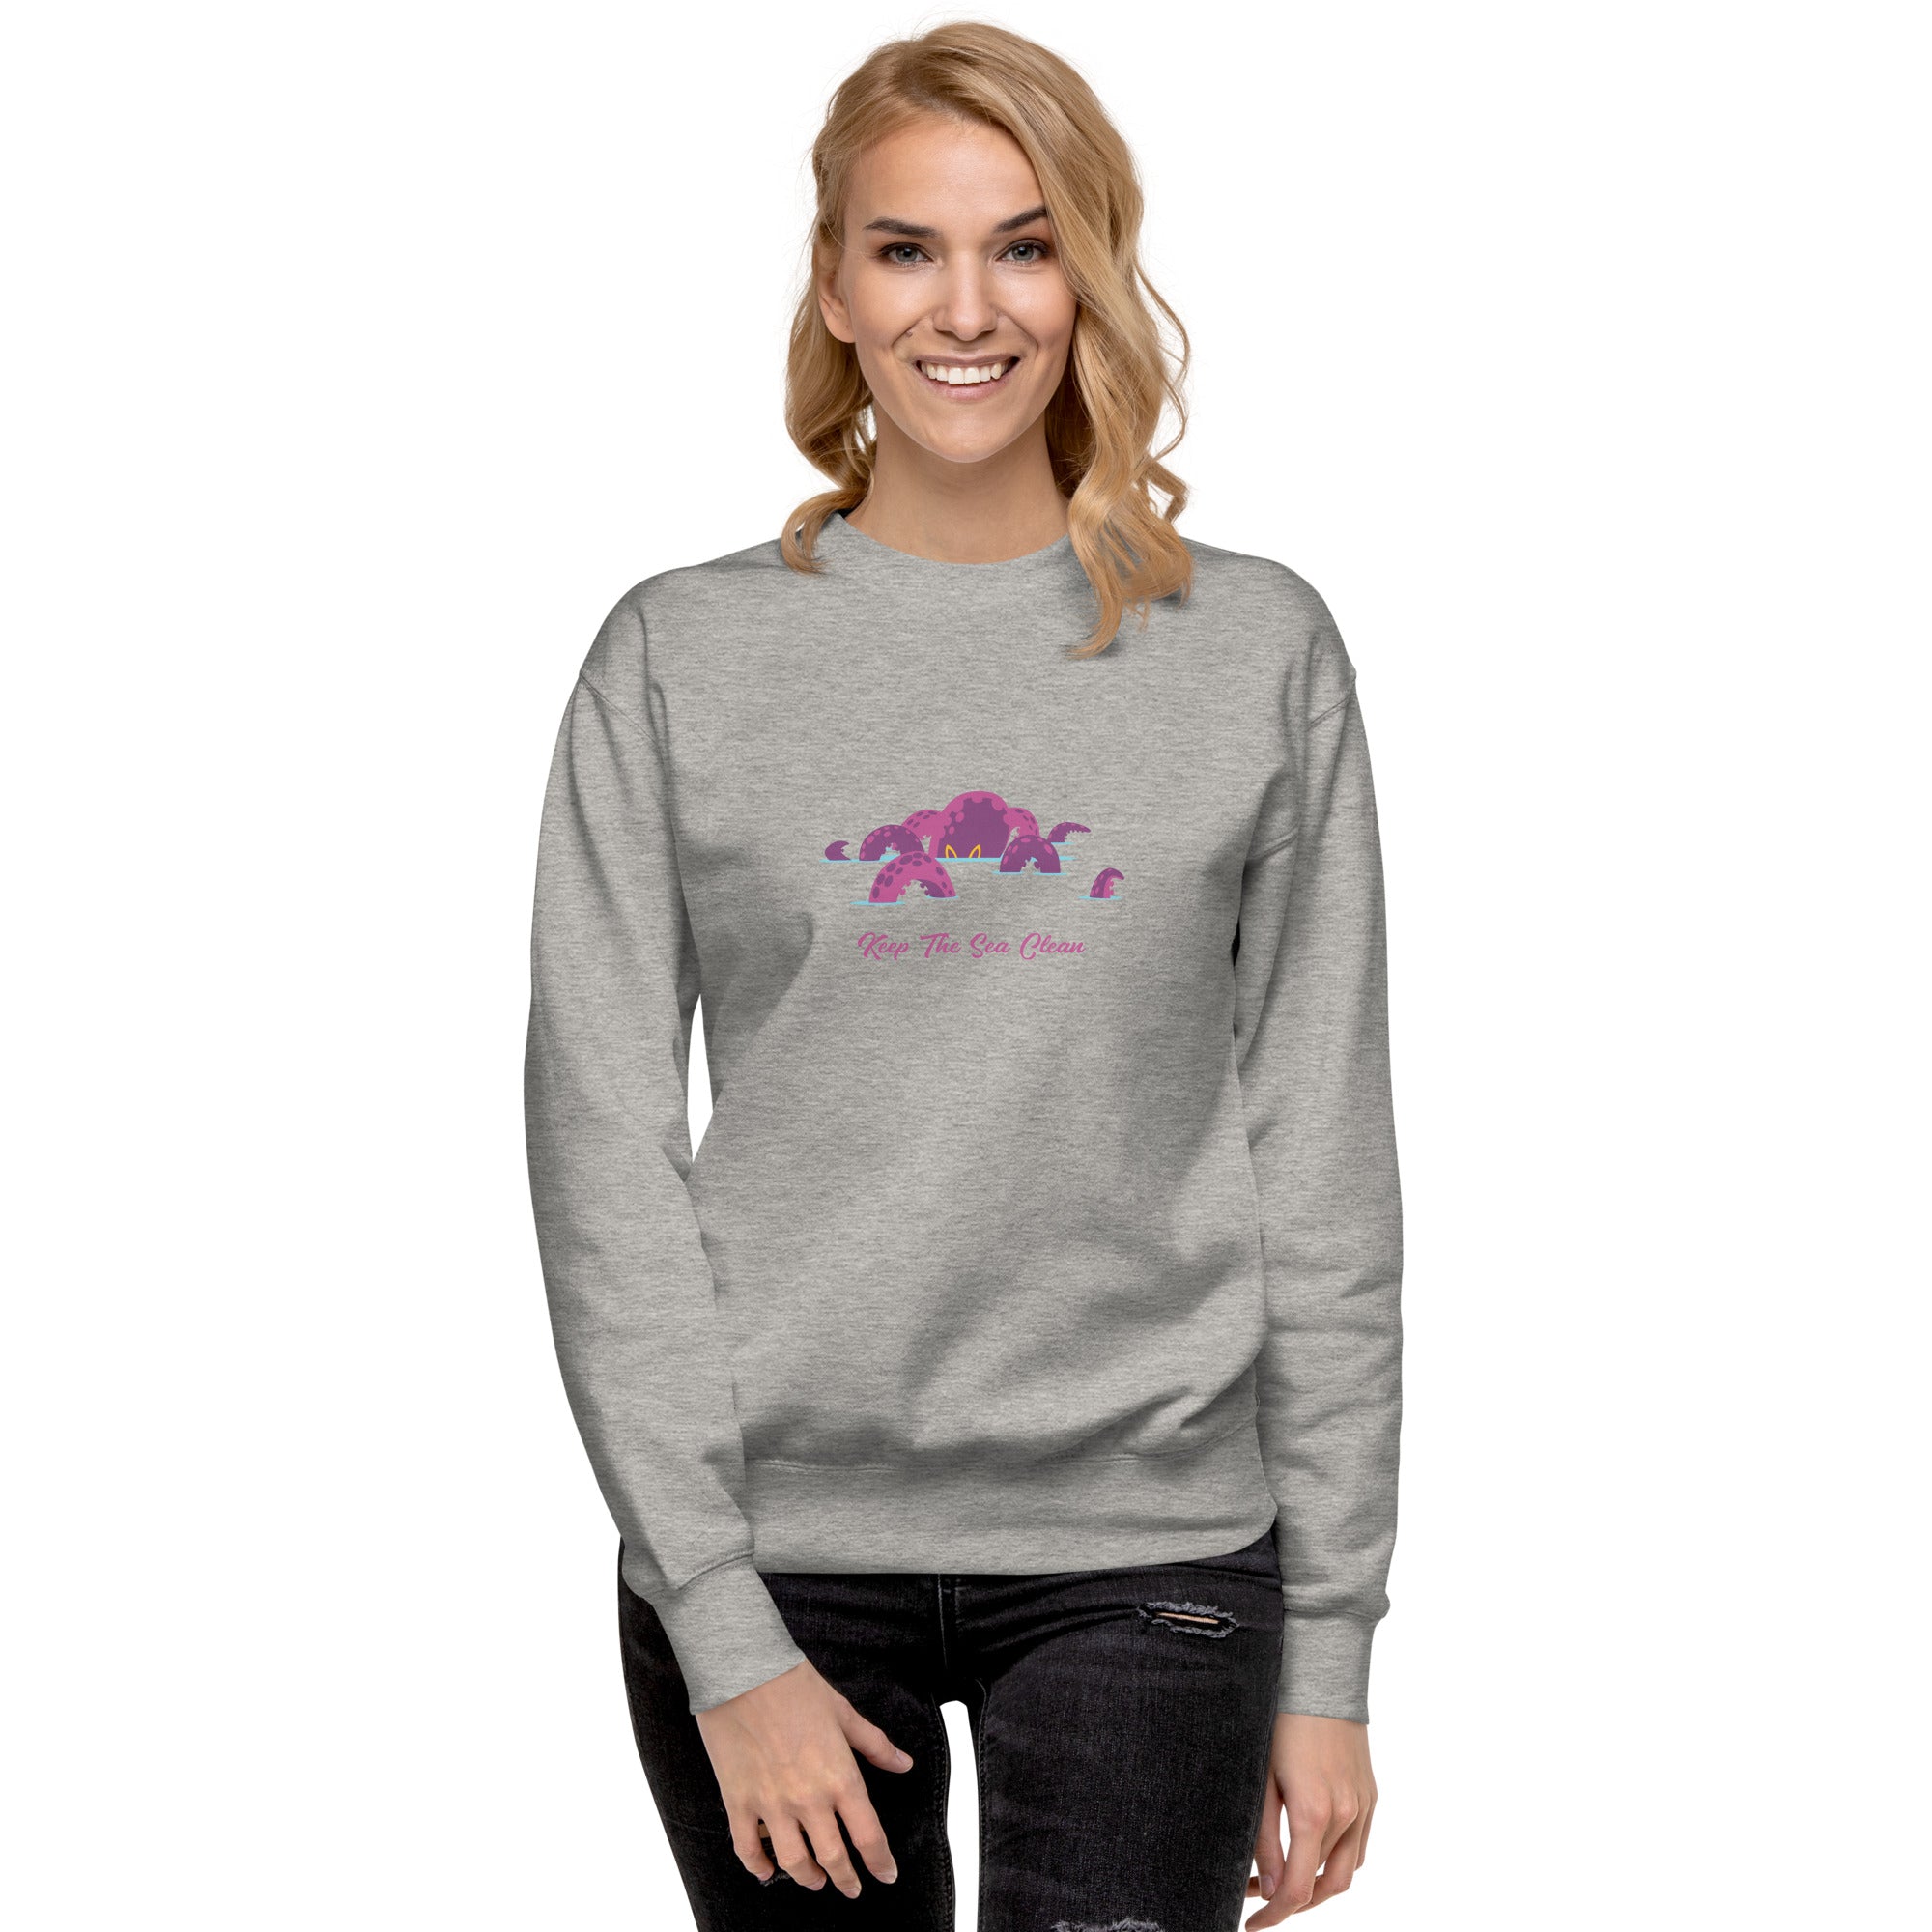 Unisex Premium Sweatshirt Octopus Purple